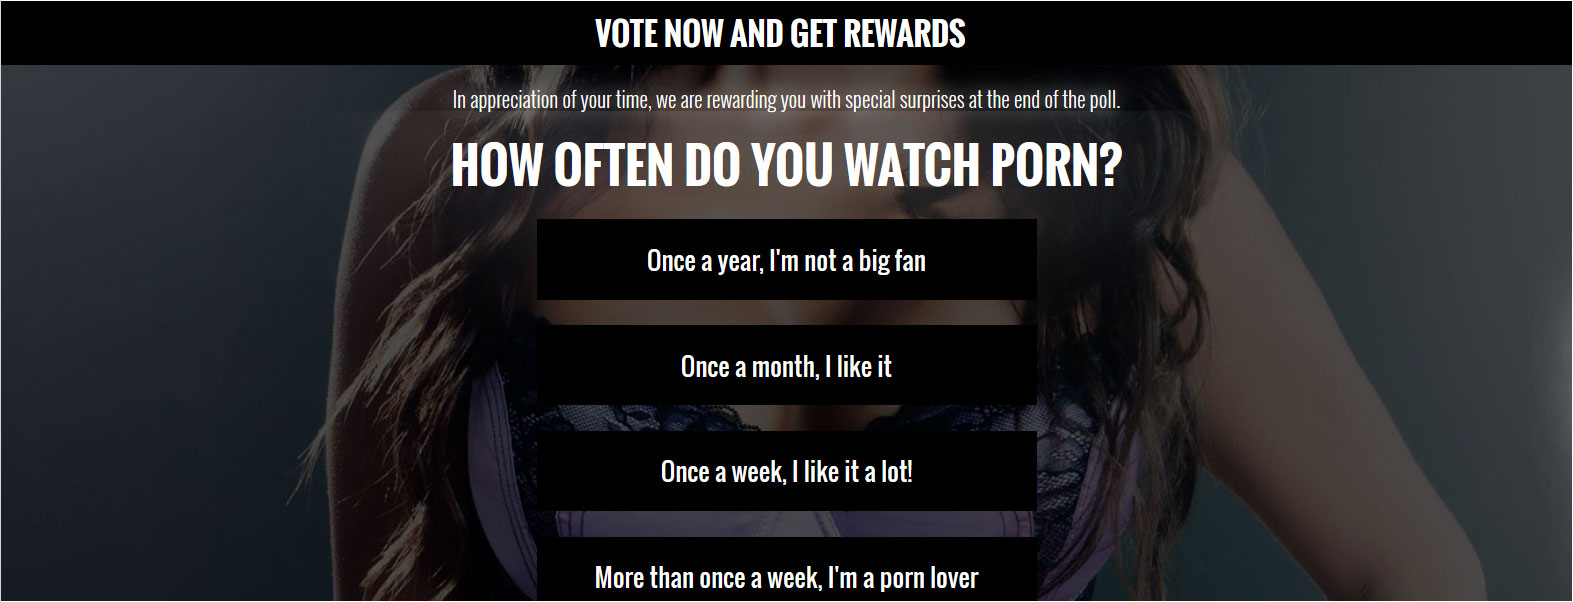 Porn Survey